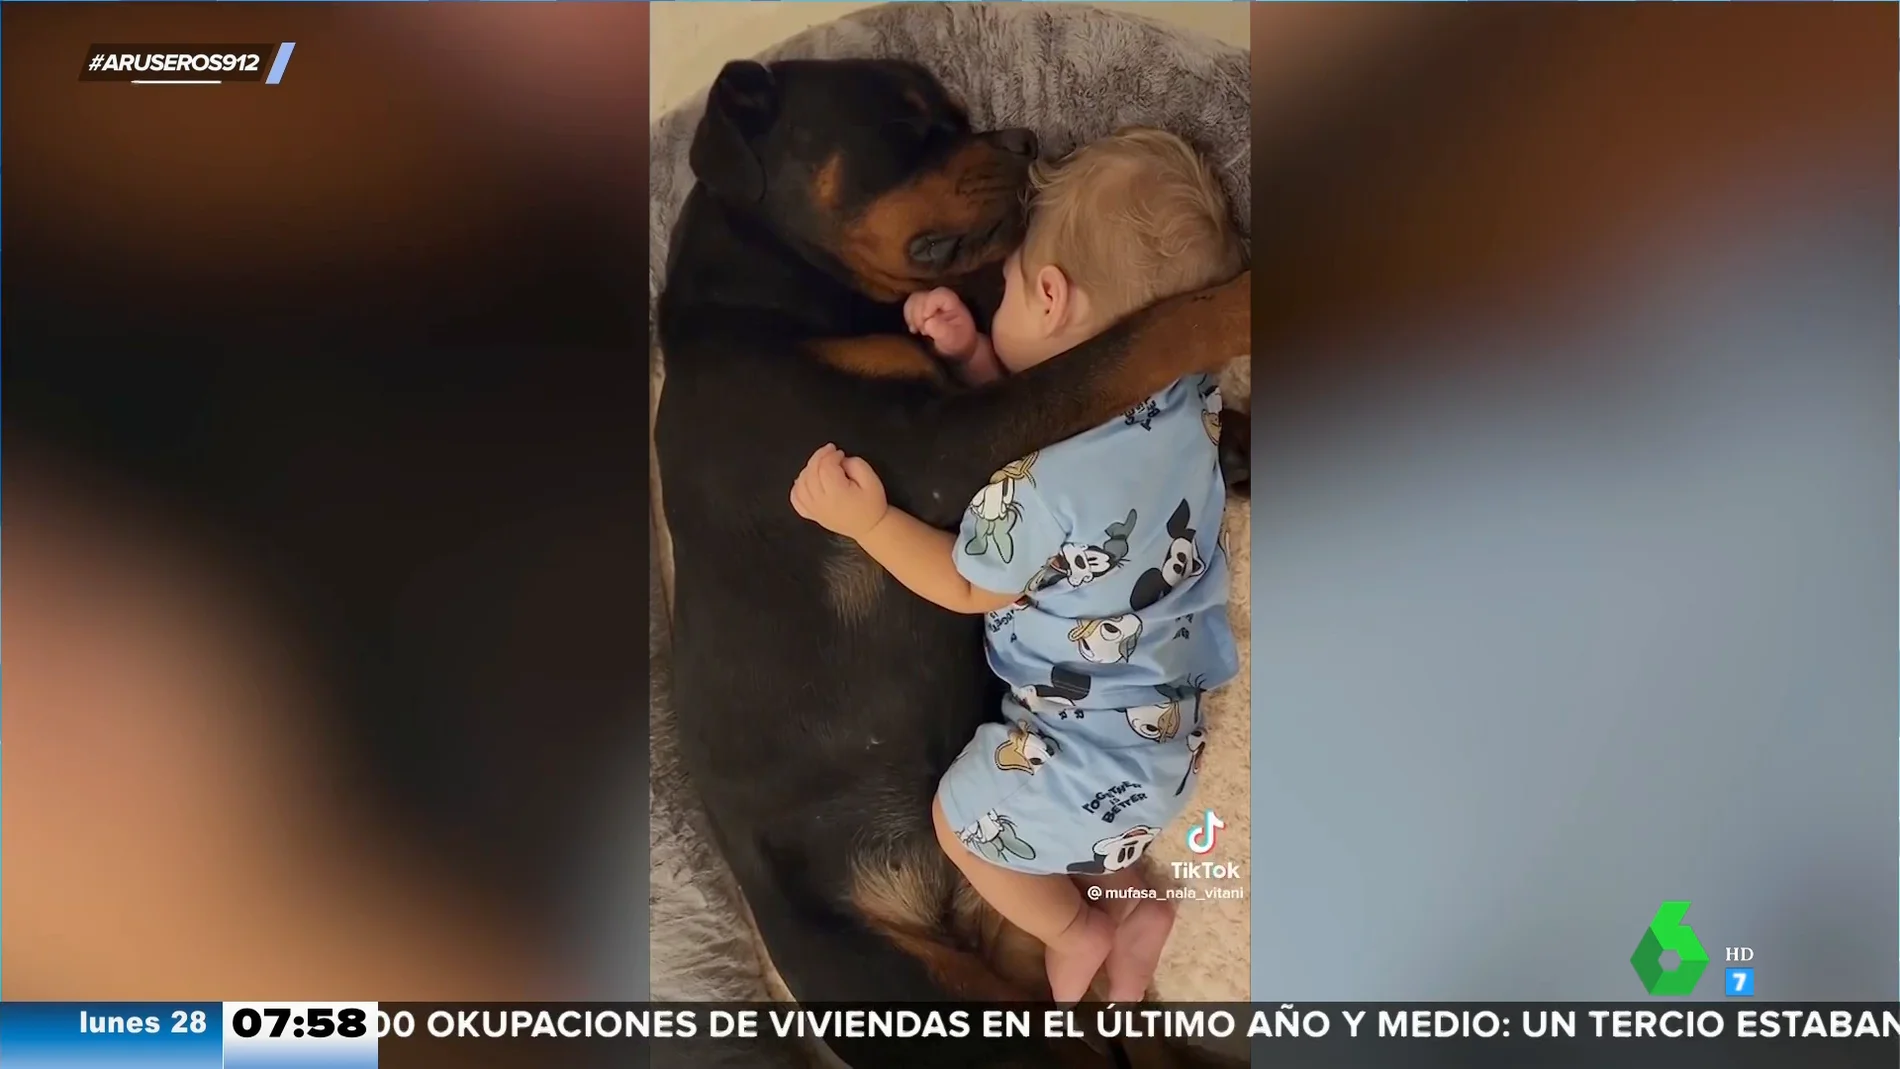 Compañeros de siesta: el adorable vídeo de un bebé y un perro que duermen juntos y abrazados